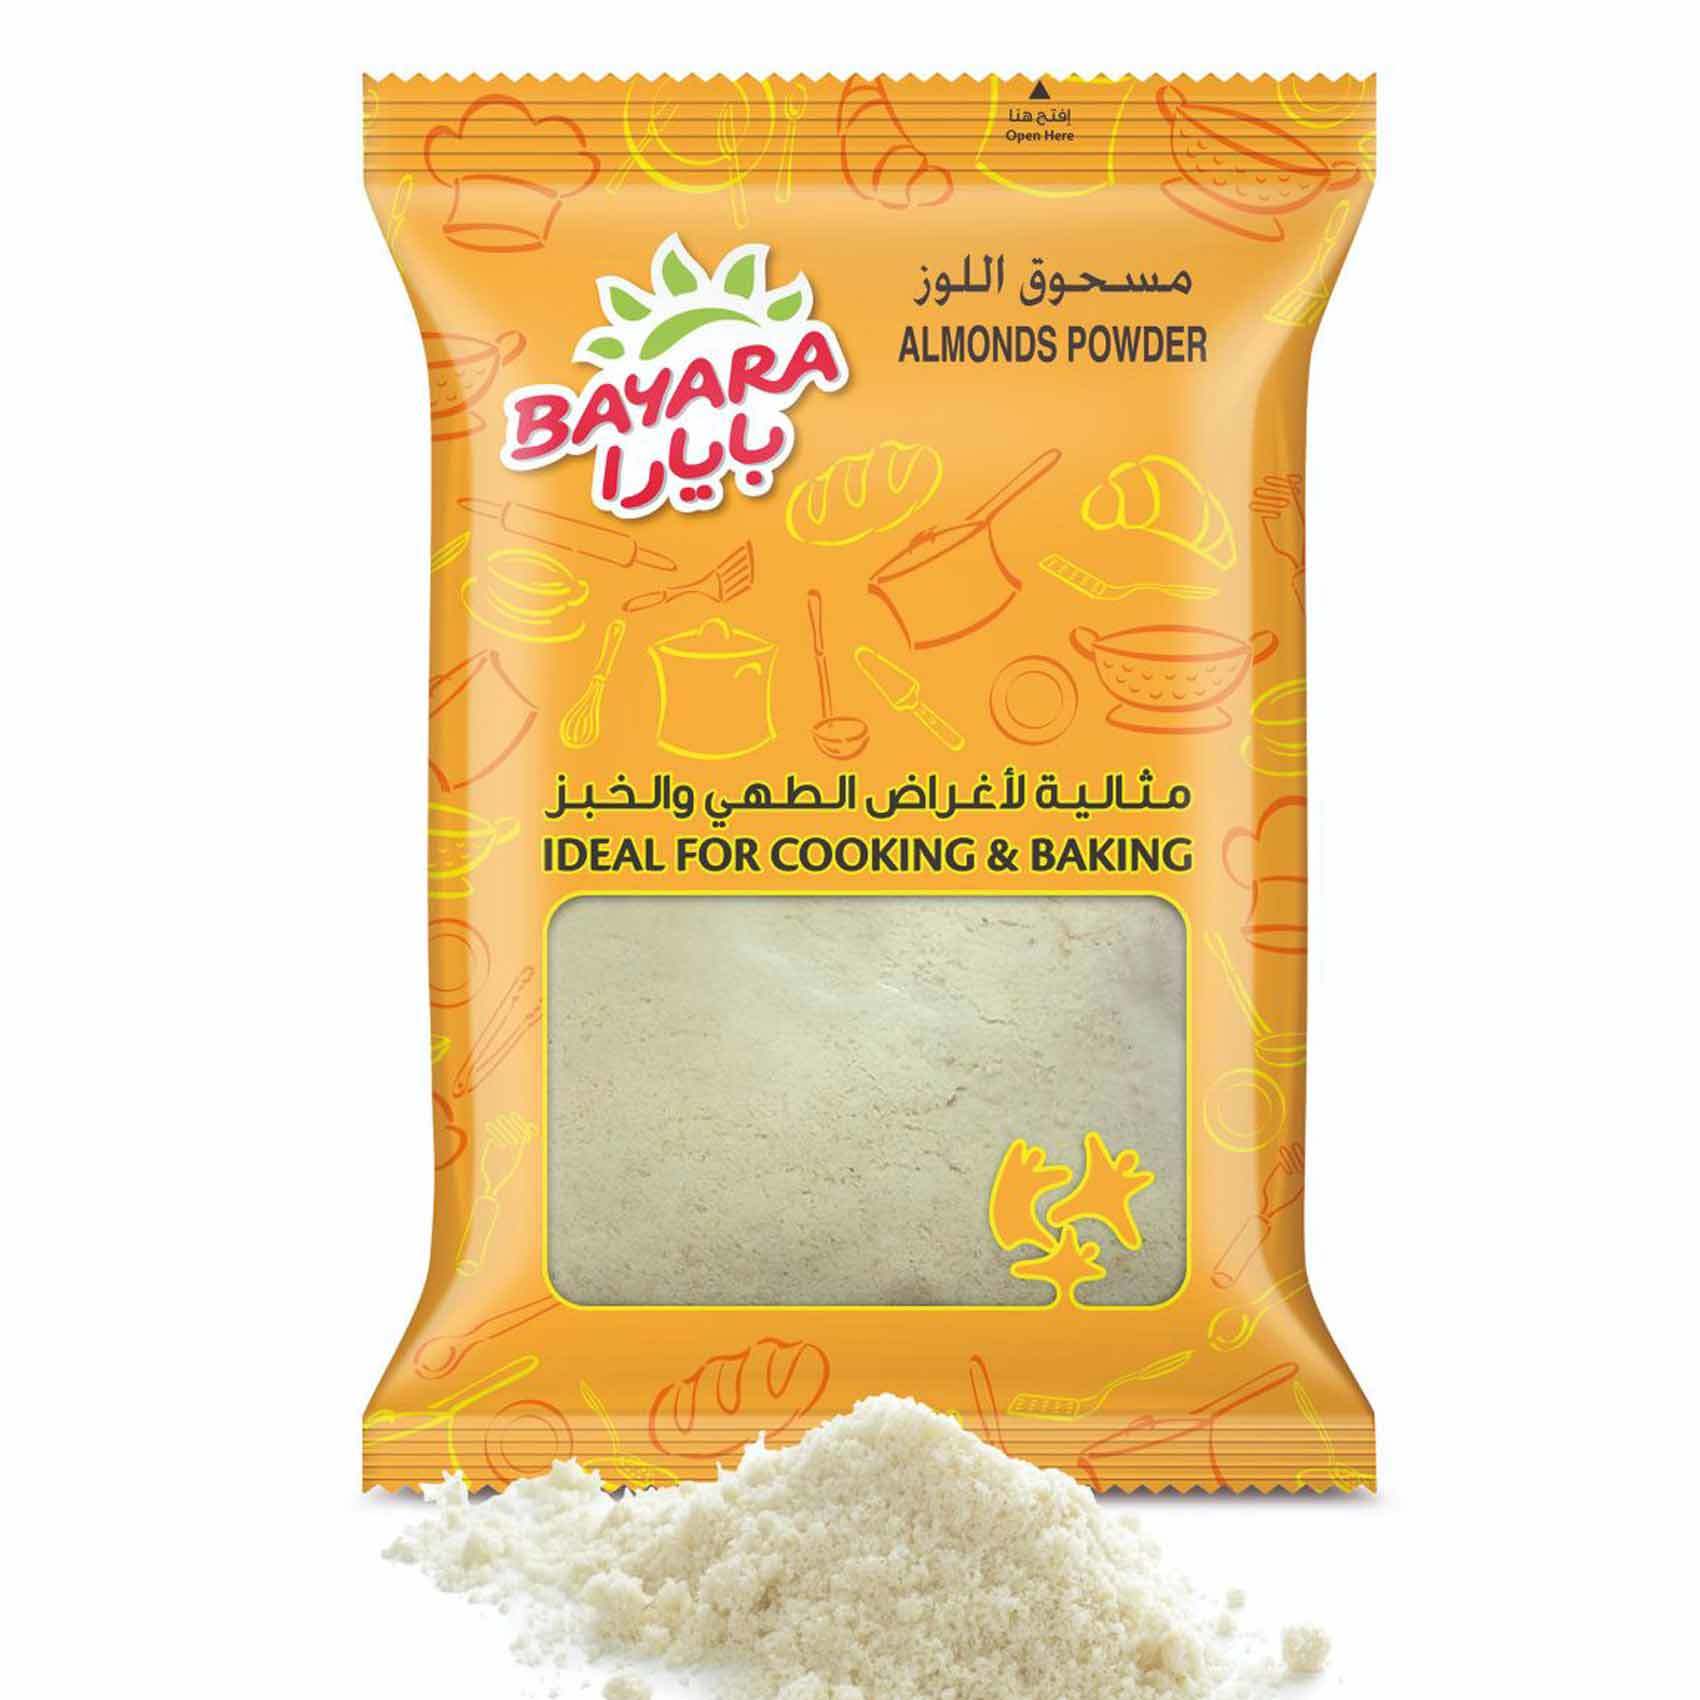 Buy Bayara Almonds Powder 125g Online Shop Food Cupboard On Carrefour Uae